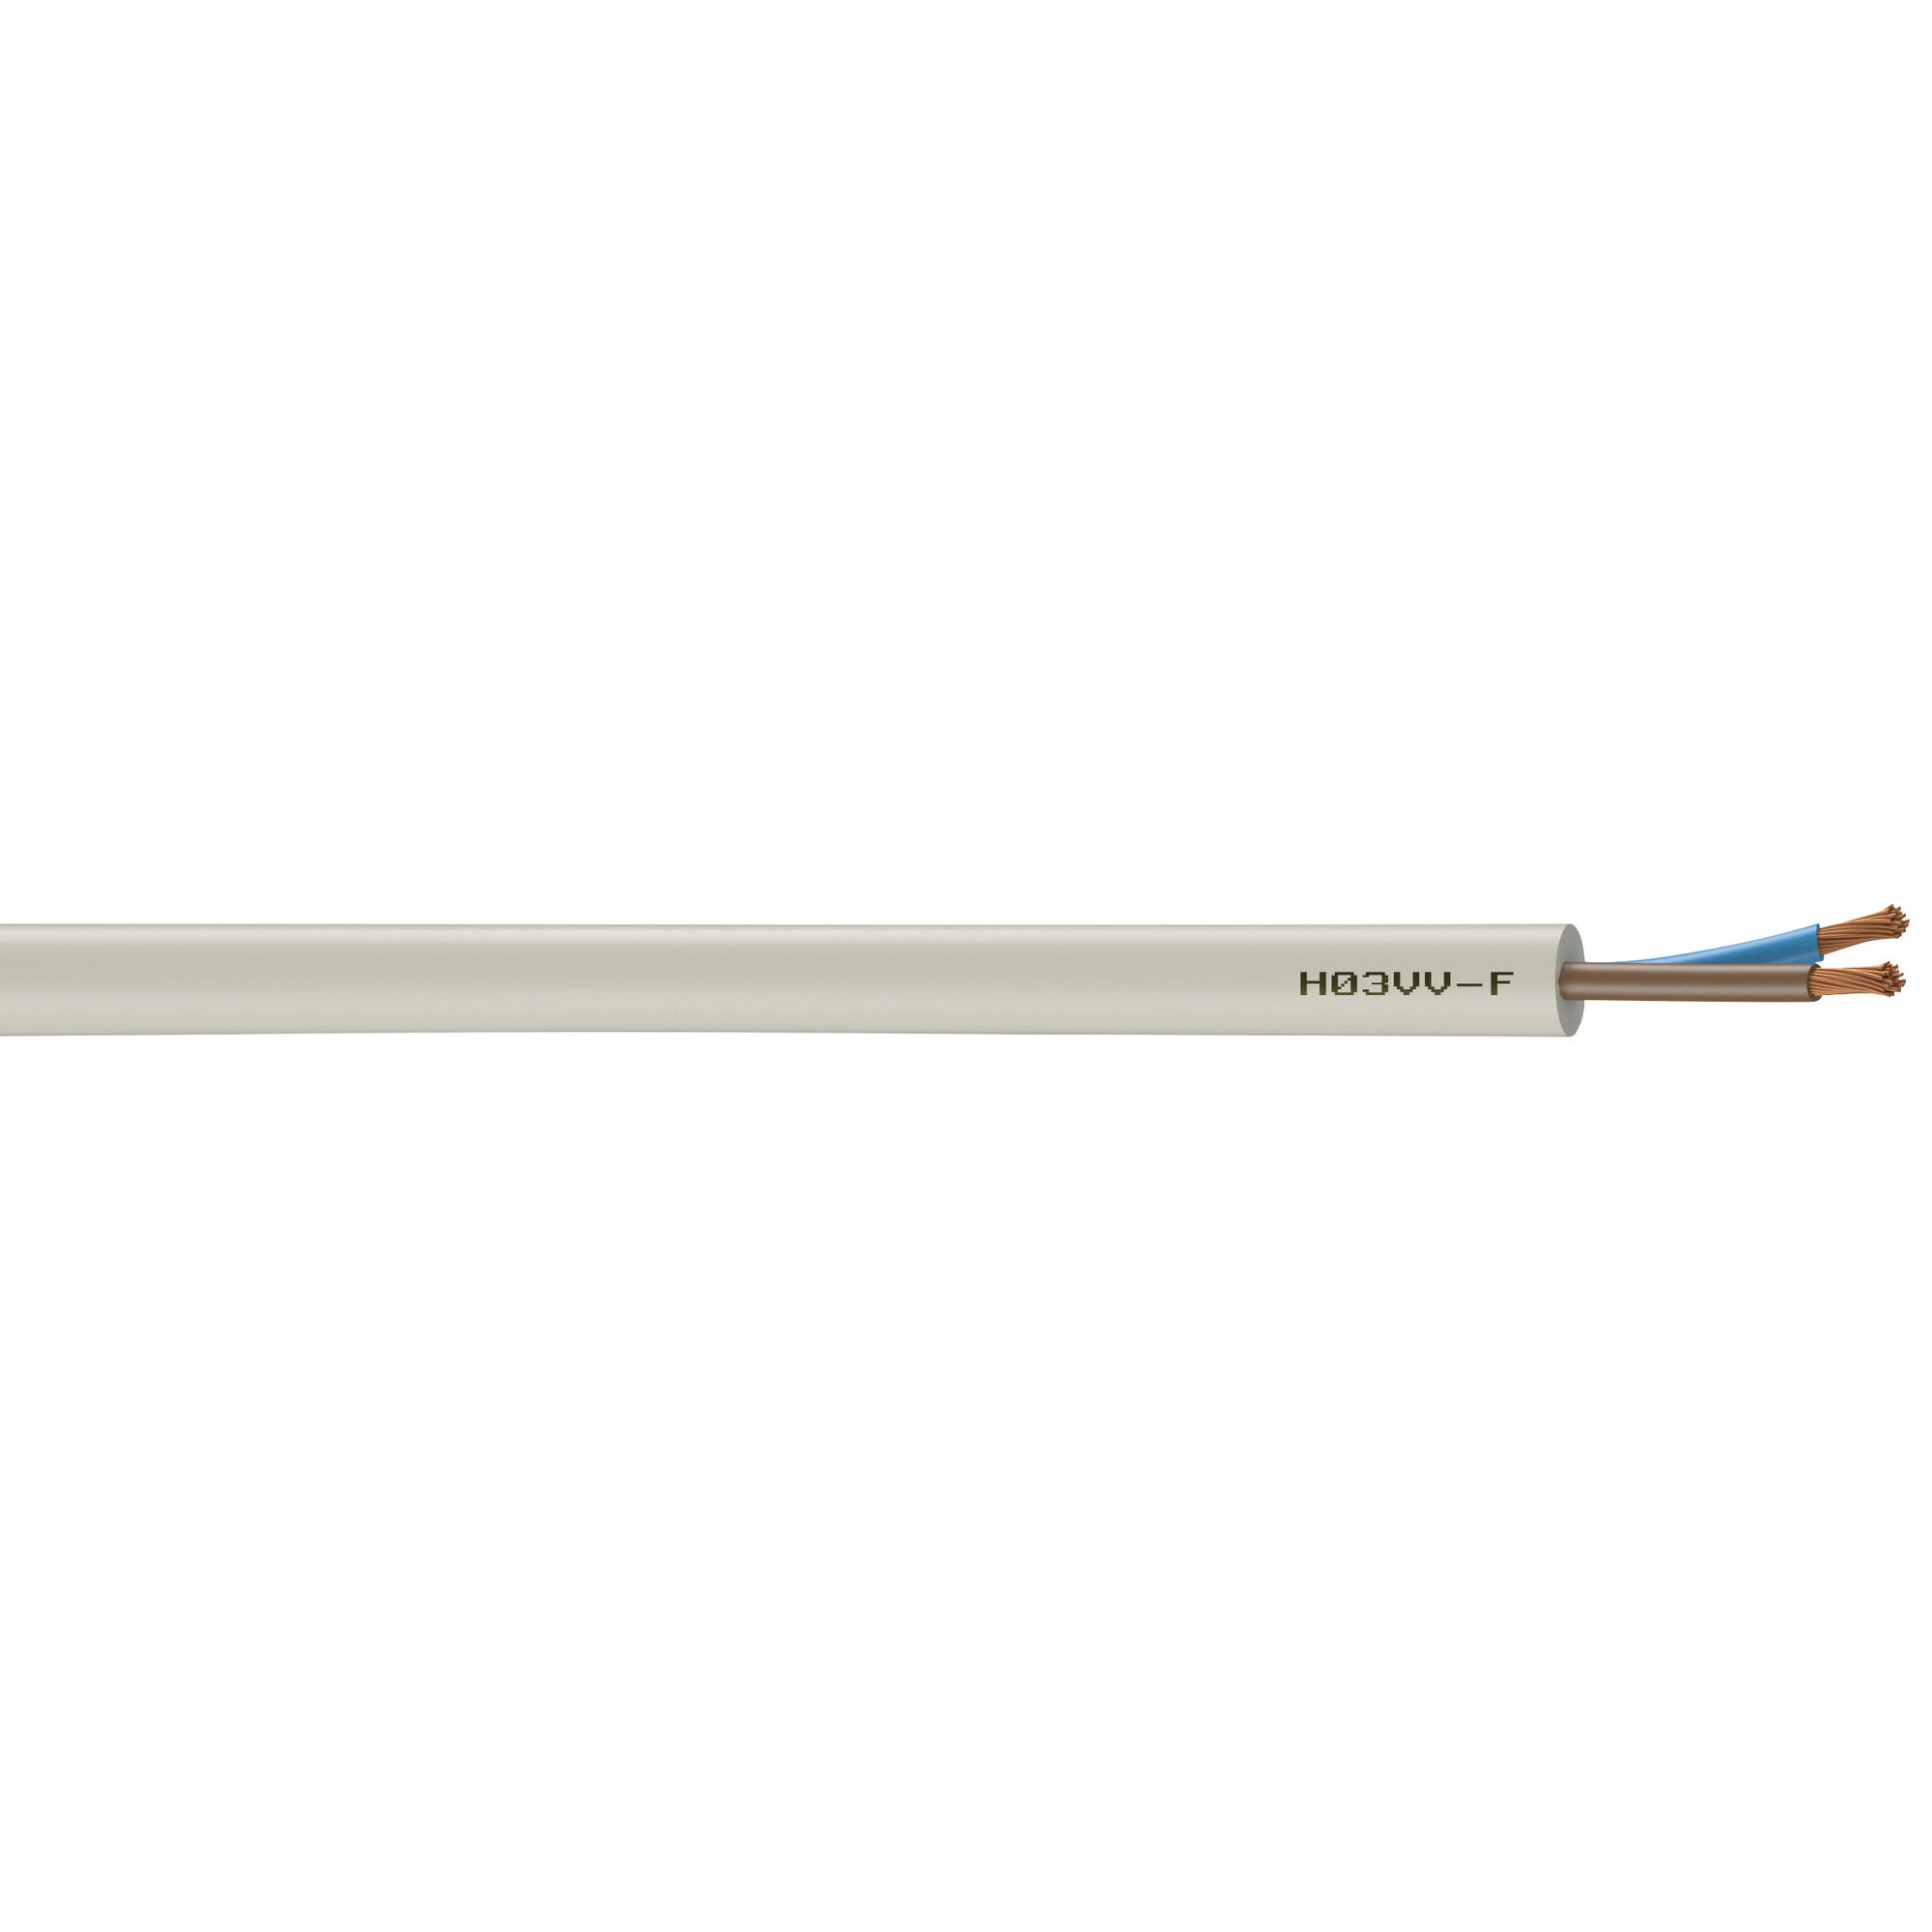 Cable électrique HO3VVF 2x0,75 mm² blanc 10 m - NEXANS FRANCE  0